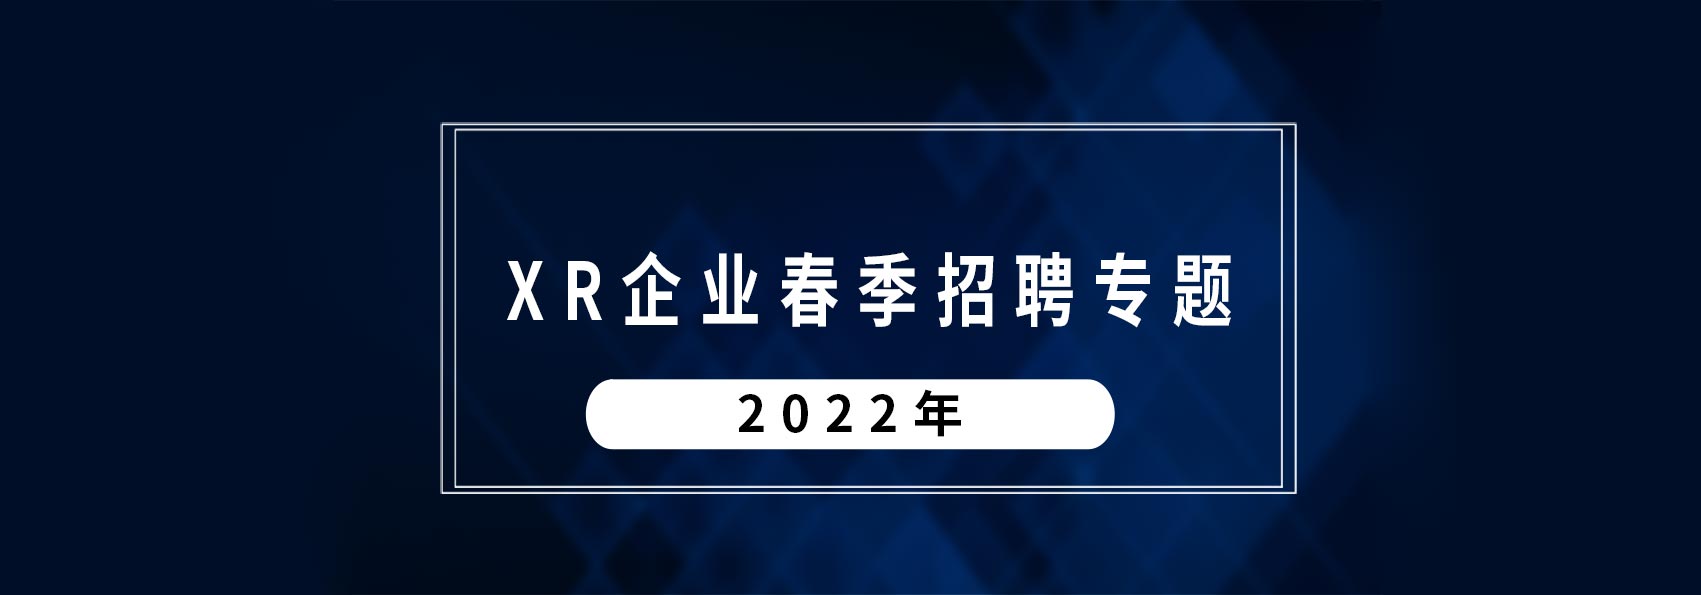 2022年元宇宙企业春季招聘